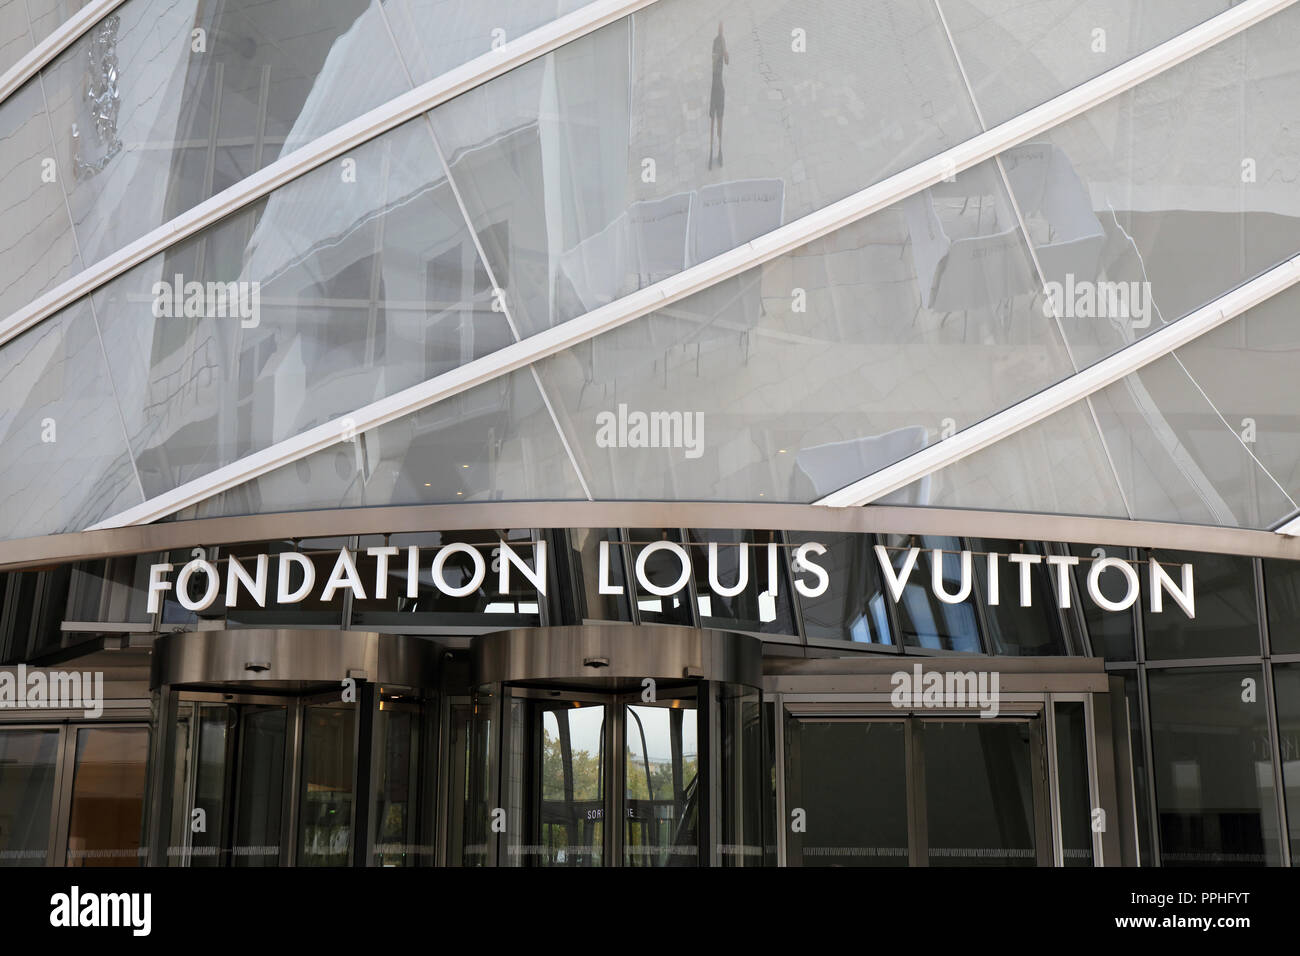 Paris, France, 22 september 2018: letters louis Vuitton foundation on a building in Paris Stock Photo